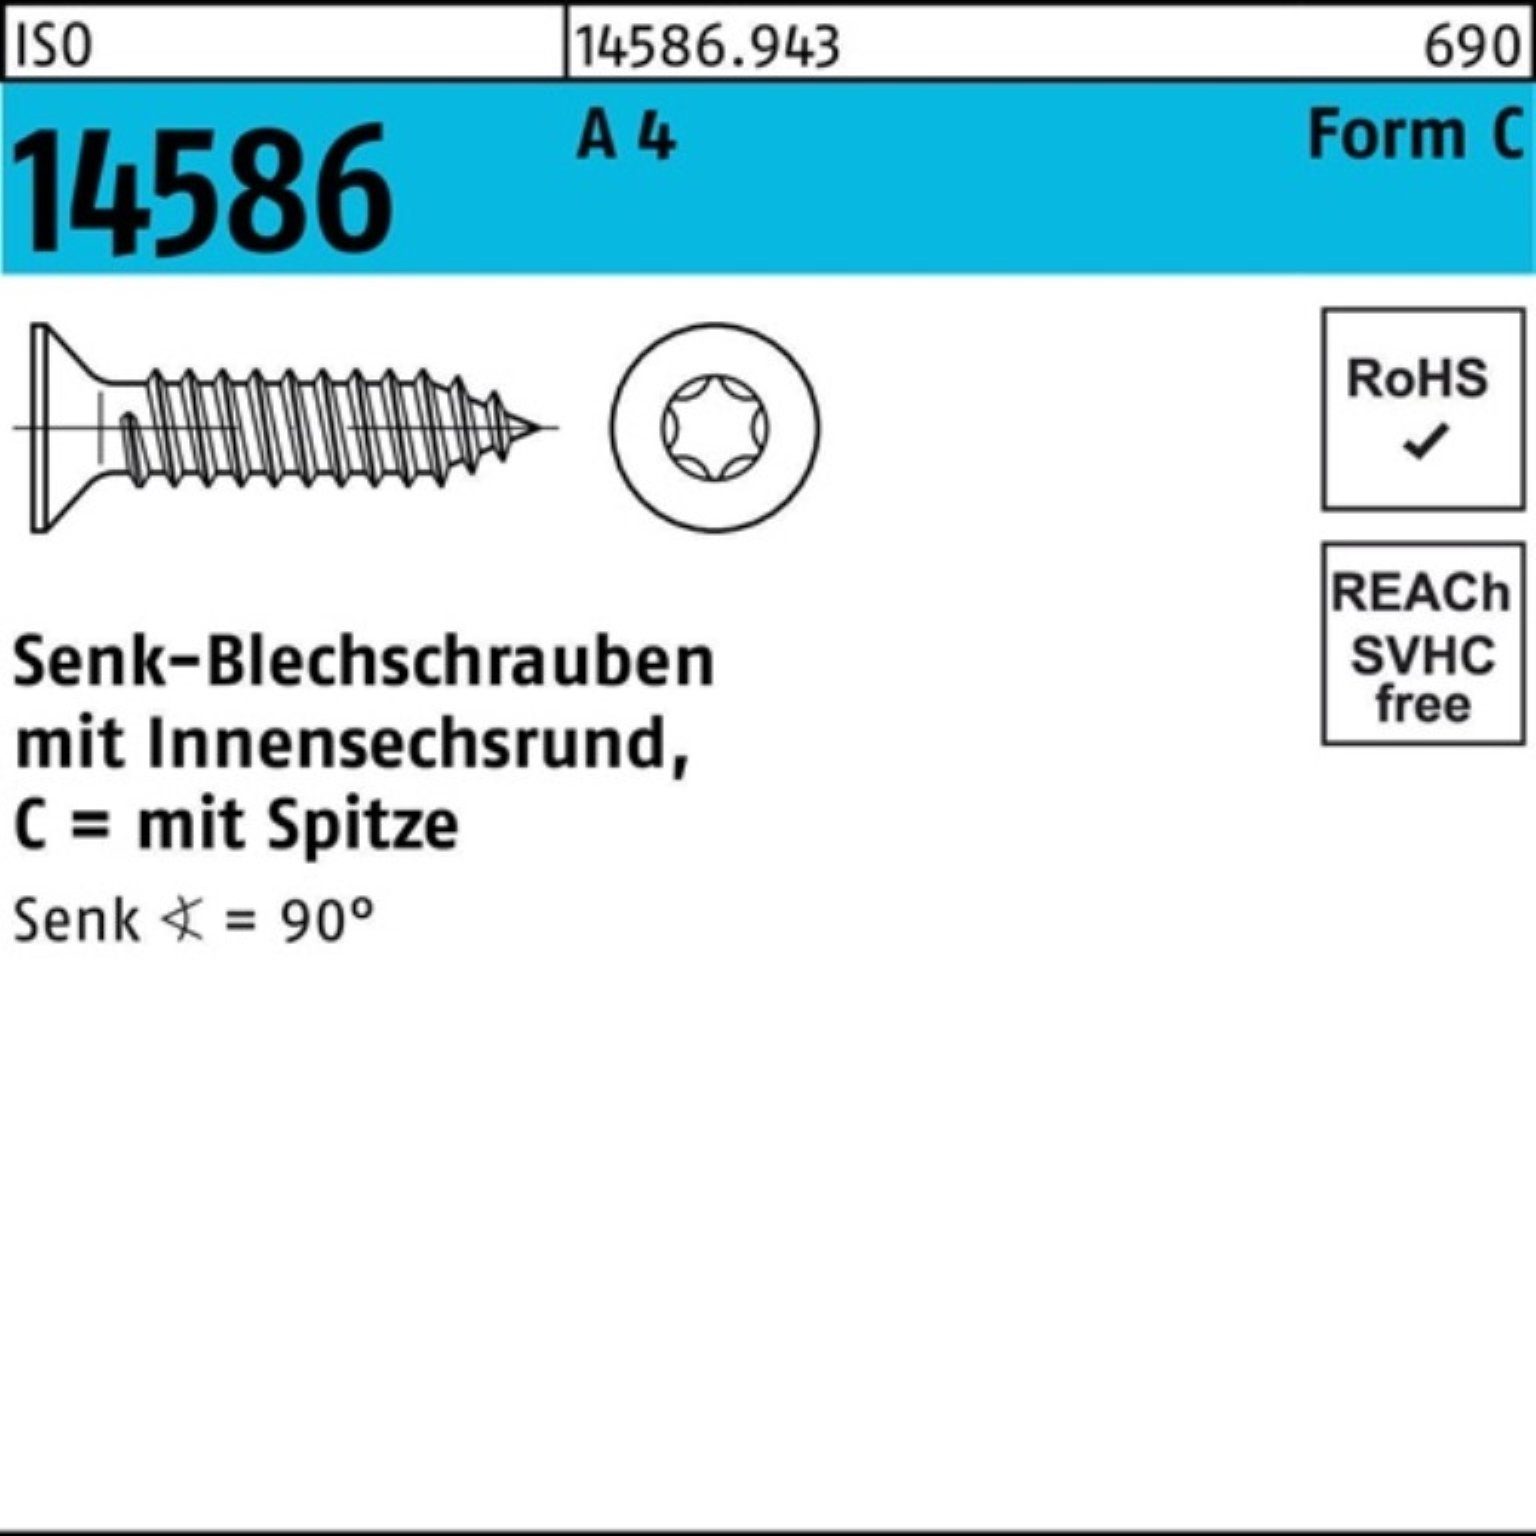 4 ISO ISR/Spitze 250 A 250er Reyher Senkblechschraube 50-T25 Schraube 5,5x Pack 14586